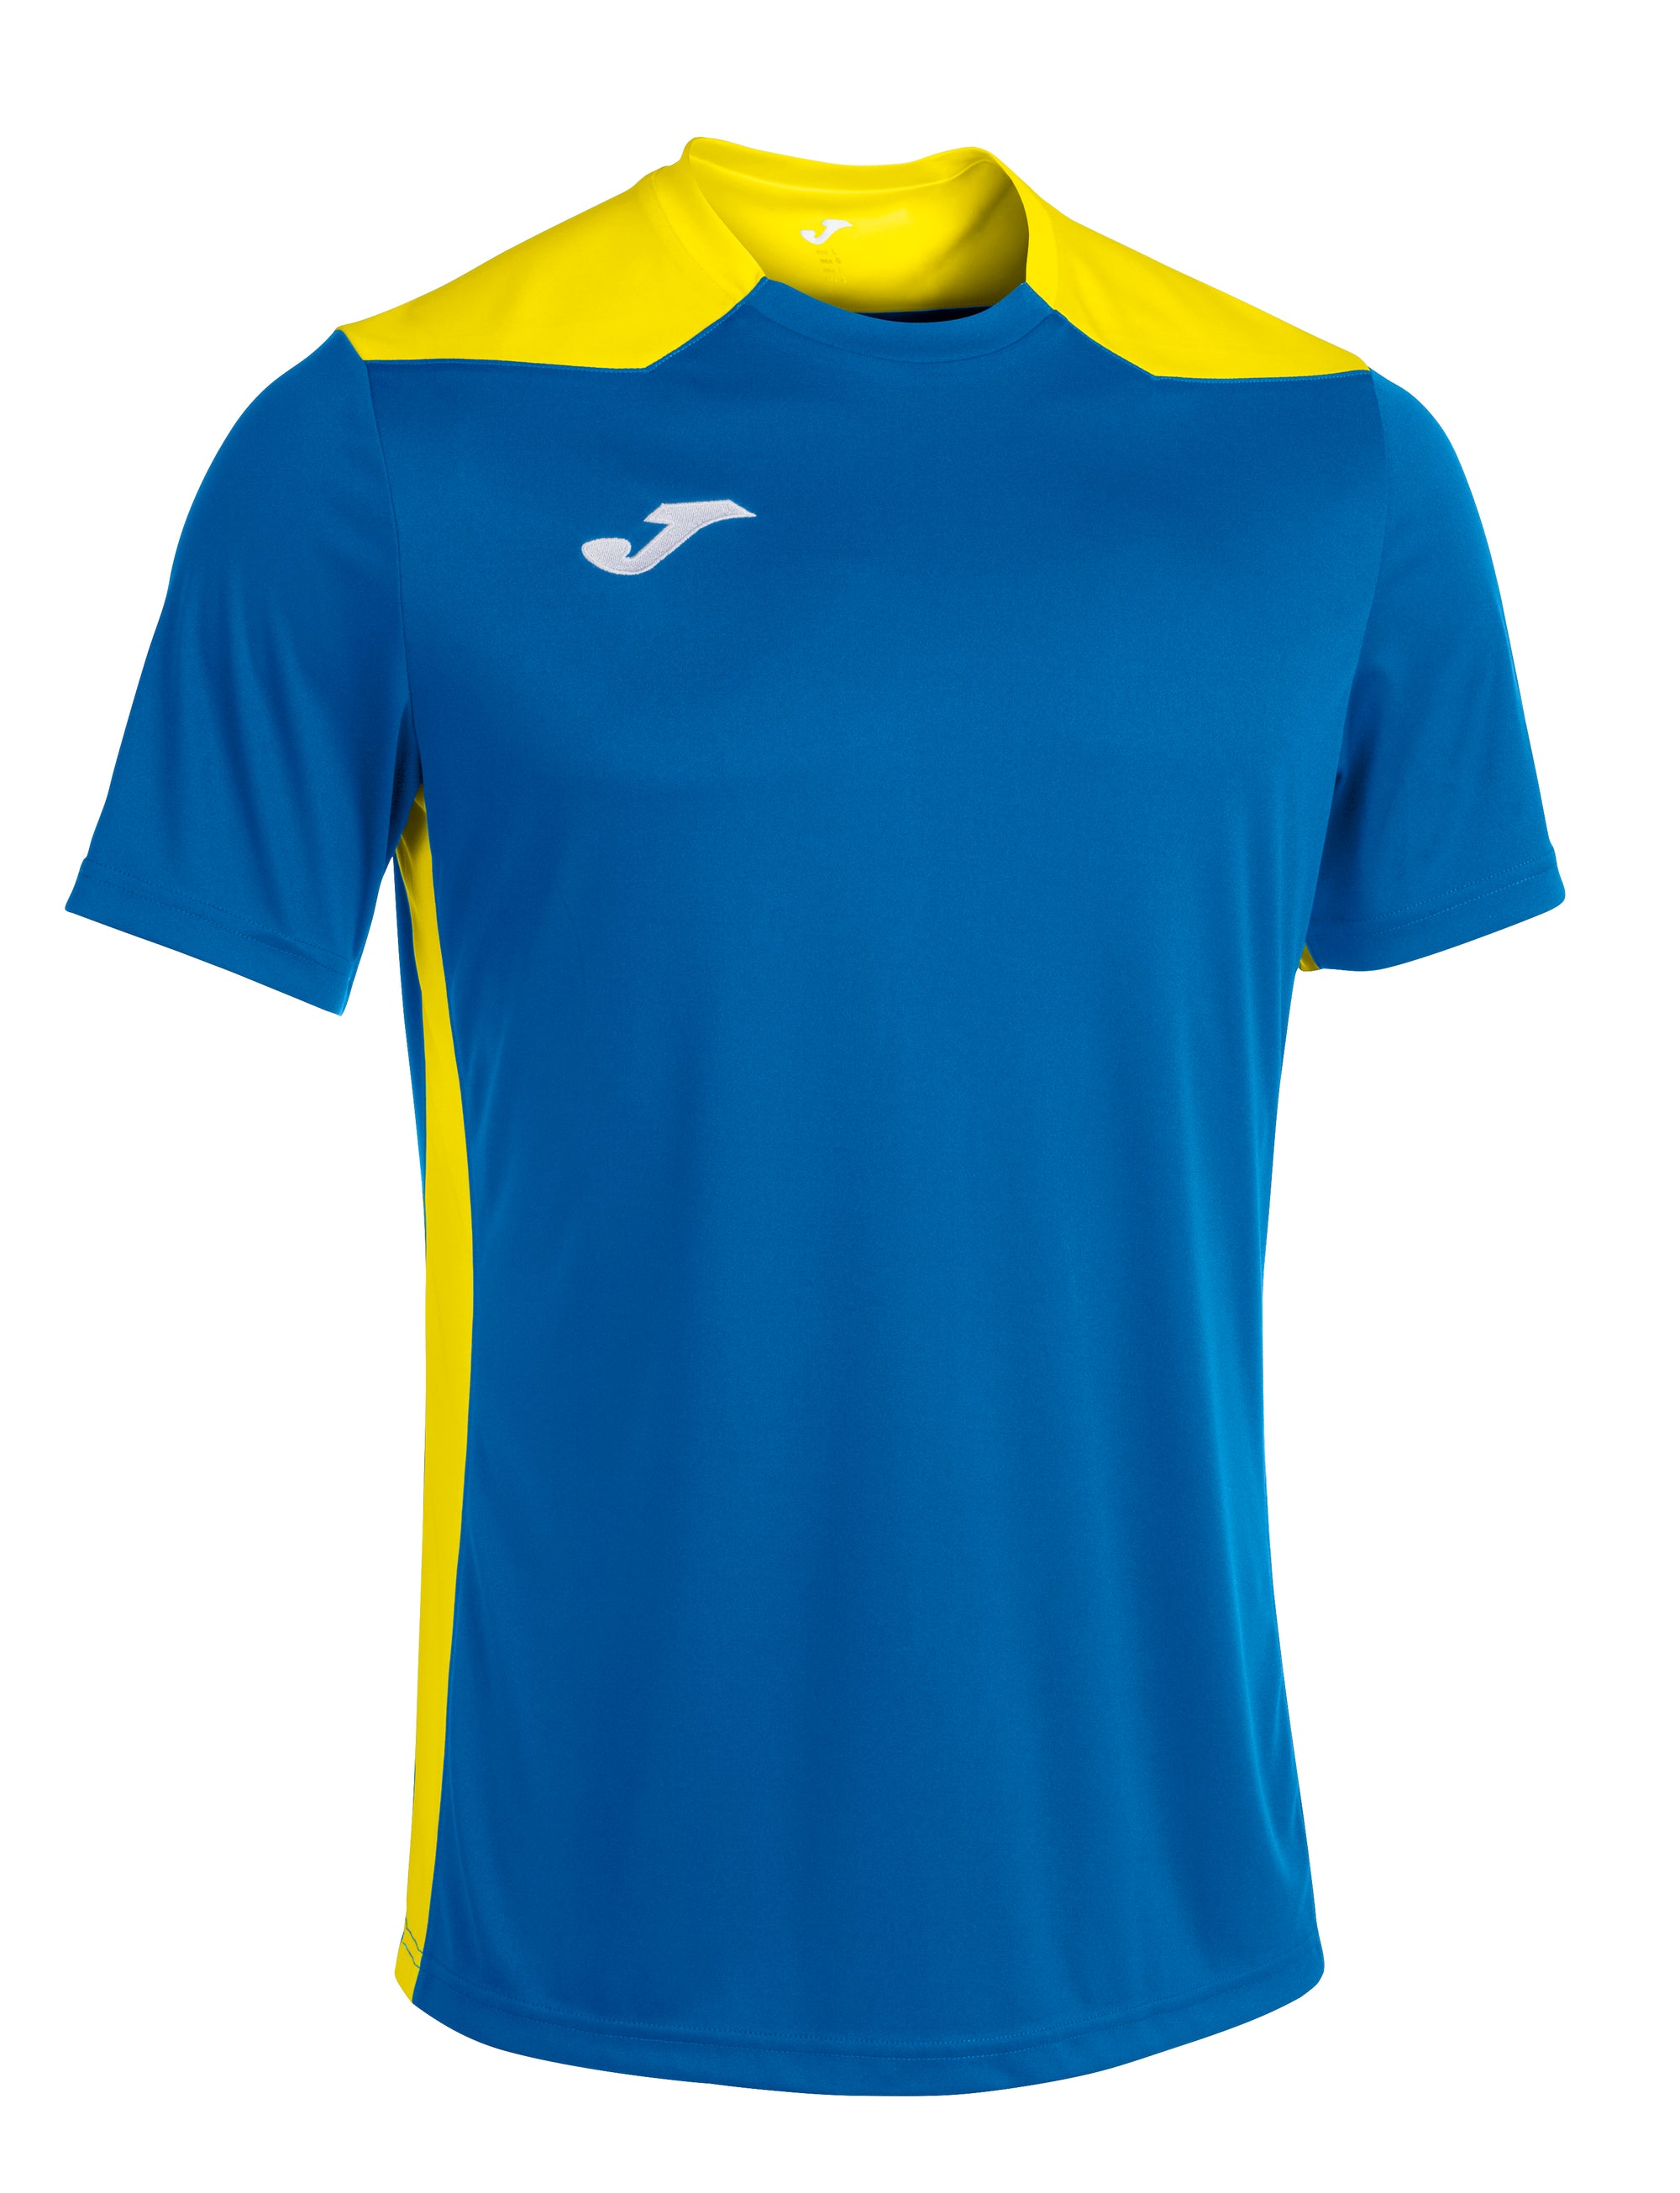 Joma Championship VI Short Sleeved T-Shirt - Royal/Yellow